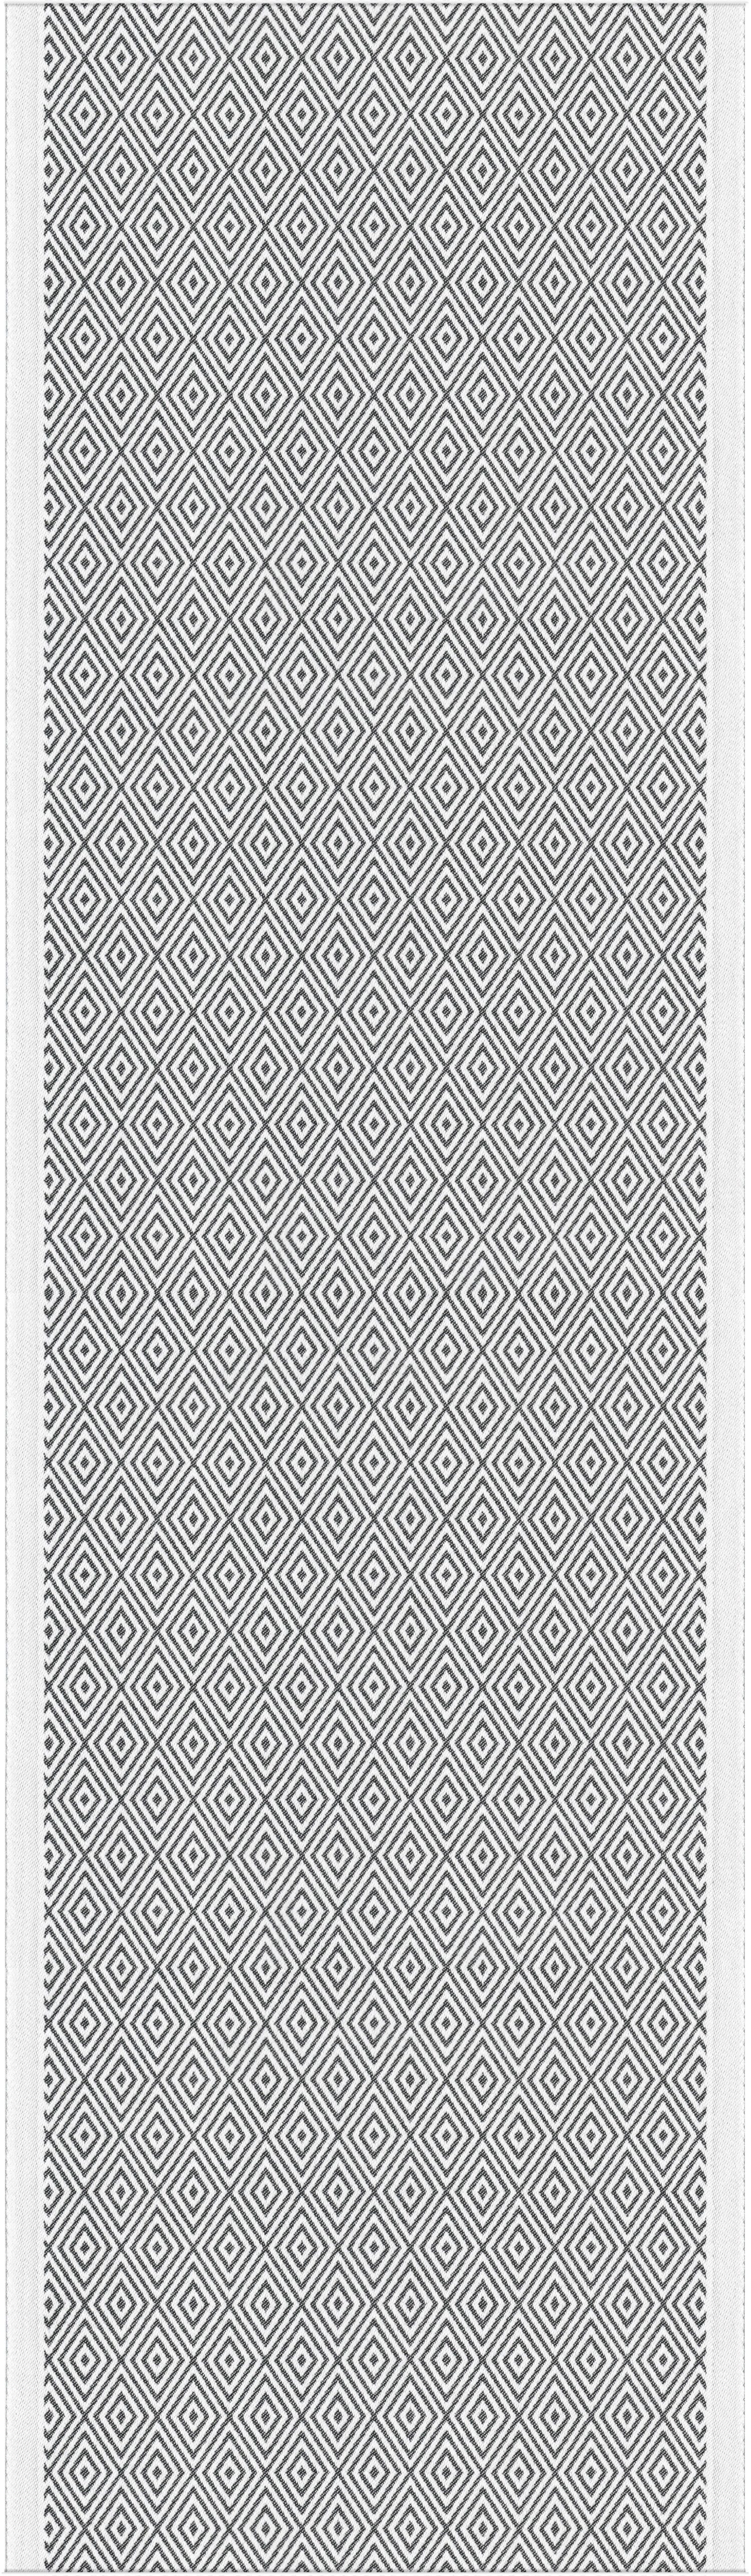 Ekelund Tischläufer Tischläufer Gåsöga 090 35x120 cm, Pixel gewebt (6-farbig)